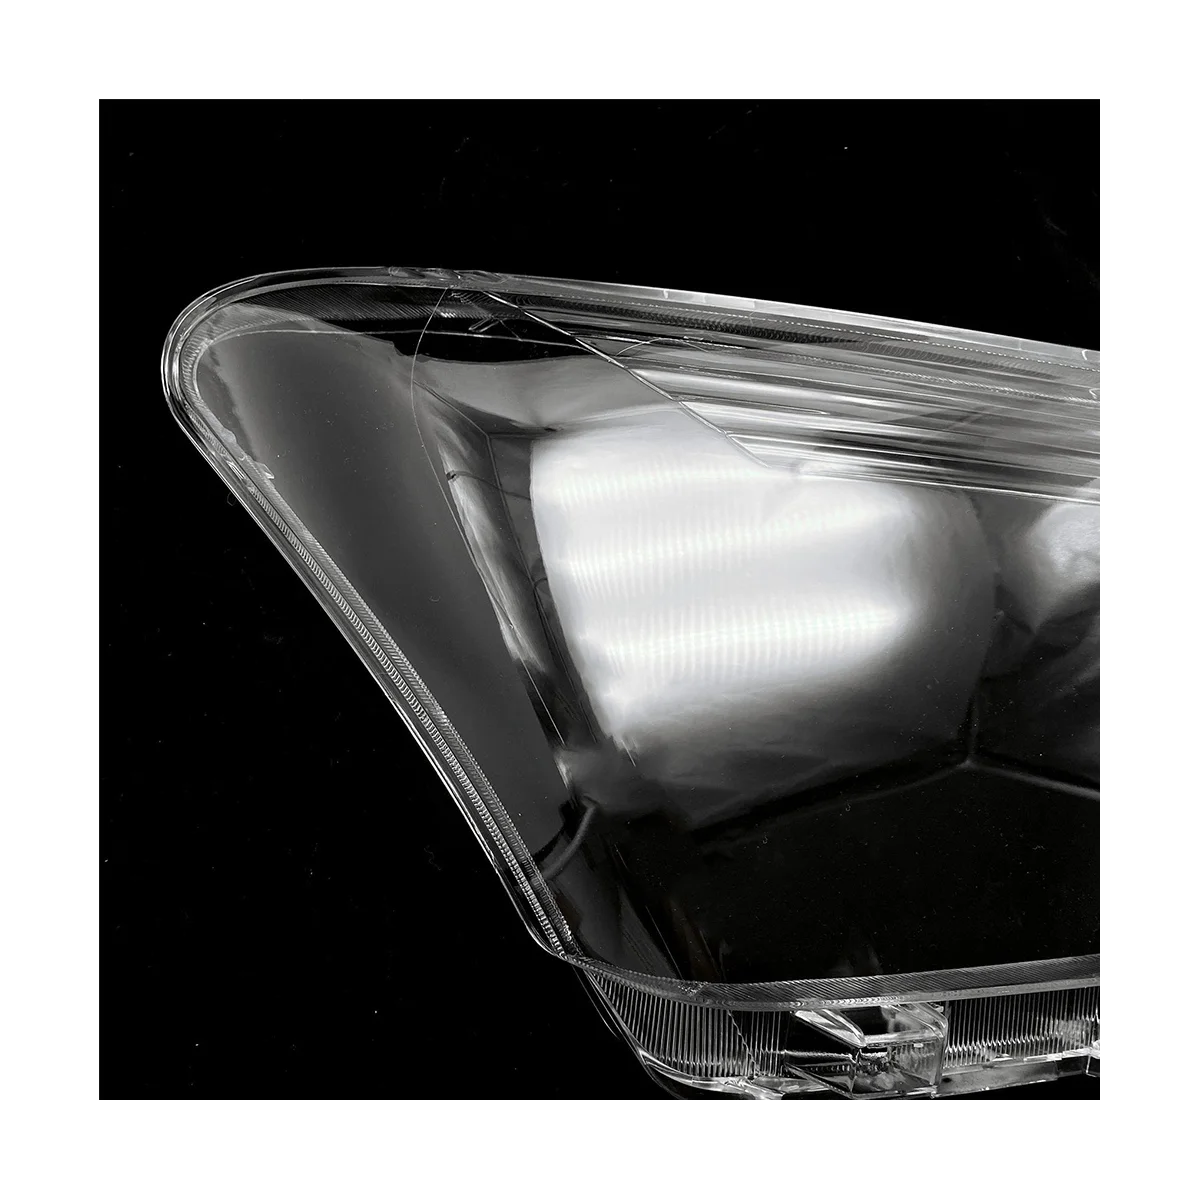 

Чехол для правой фары Прозрачный чехол для передней фары для Isuzu D-MAX 2019 2020